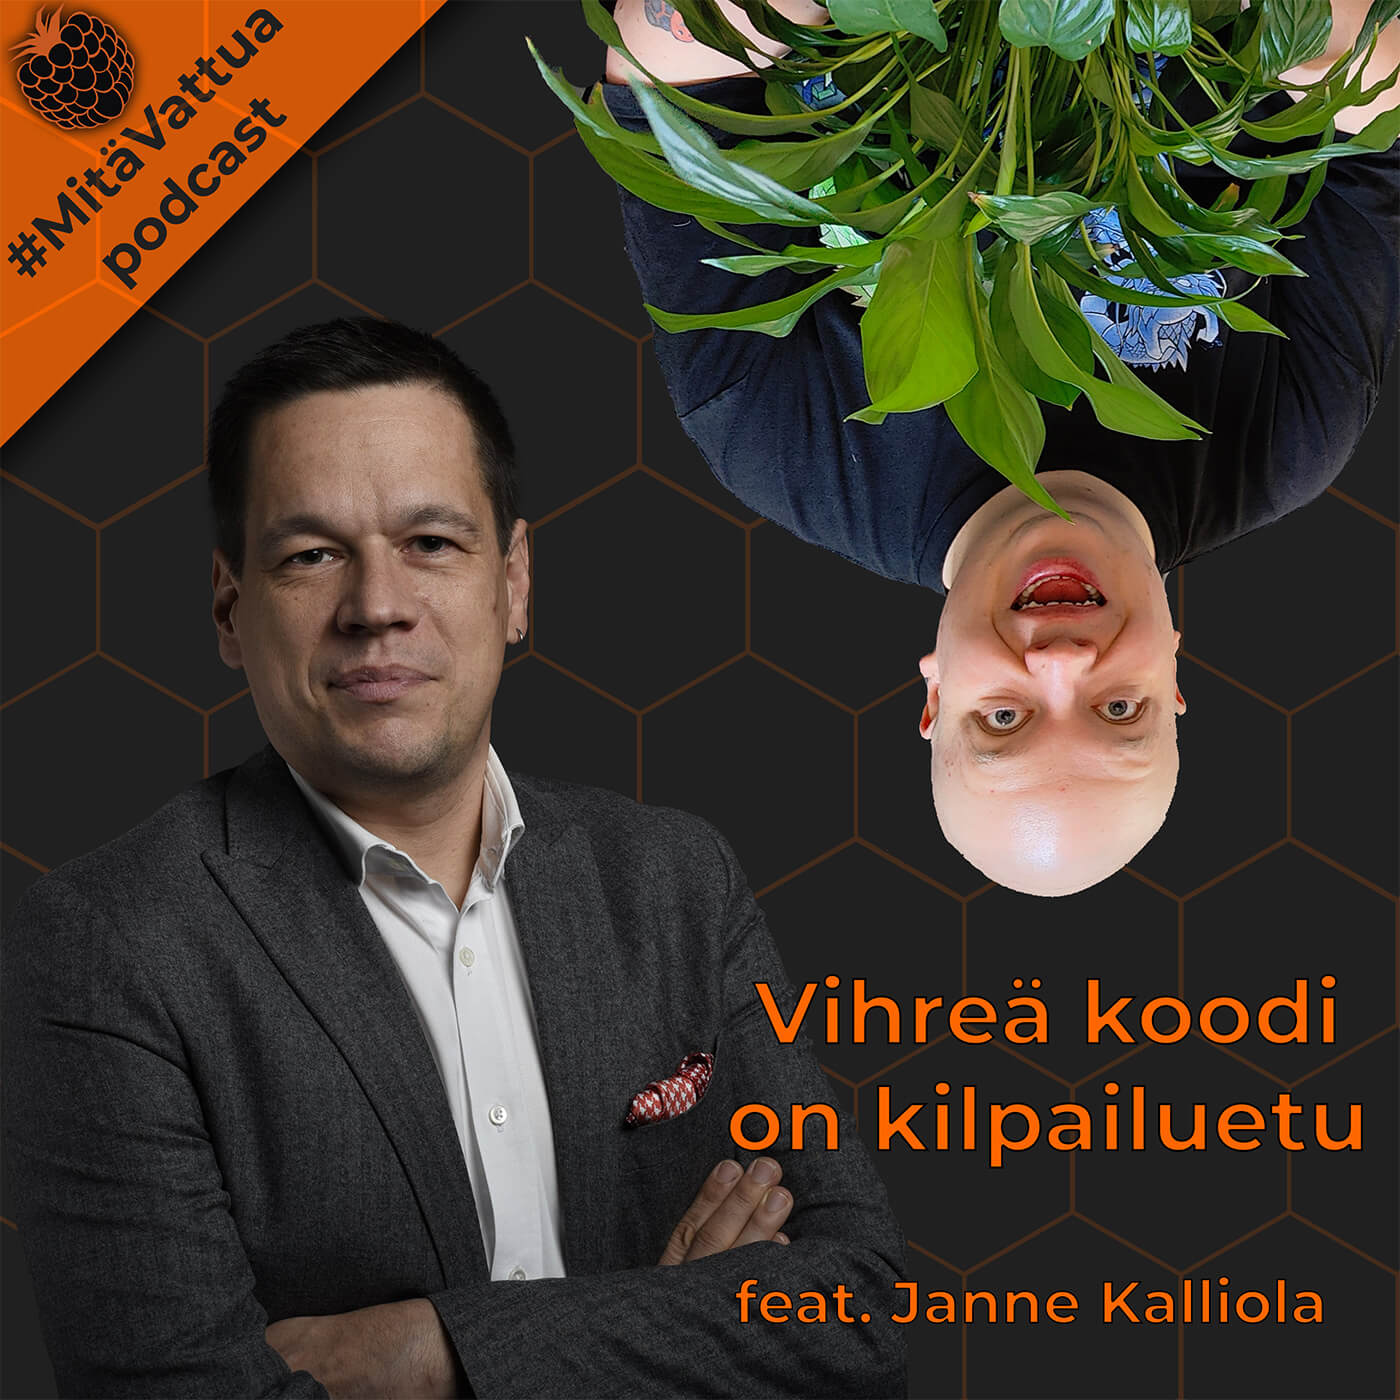 Vihreä koodi on kilpailuetu feat. Janne Kalliola